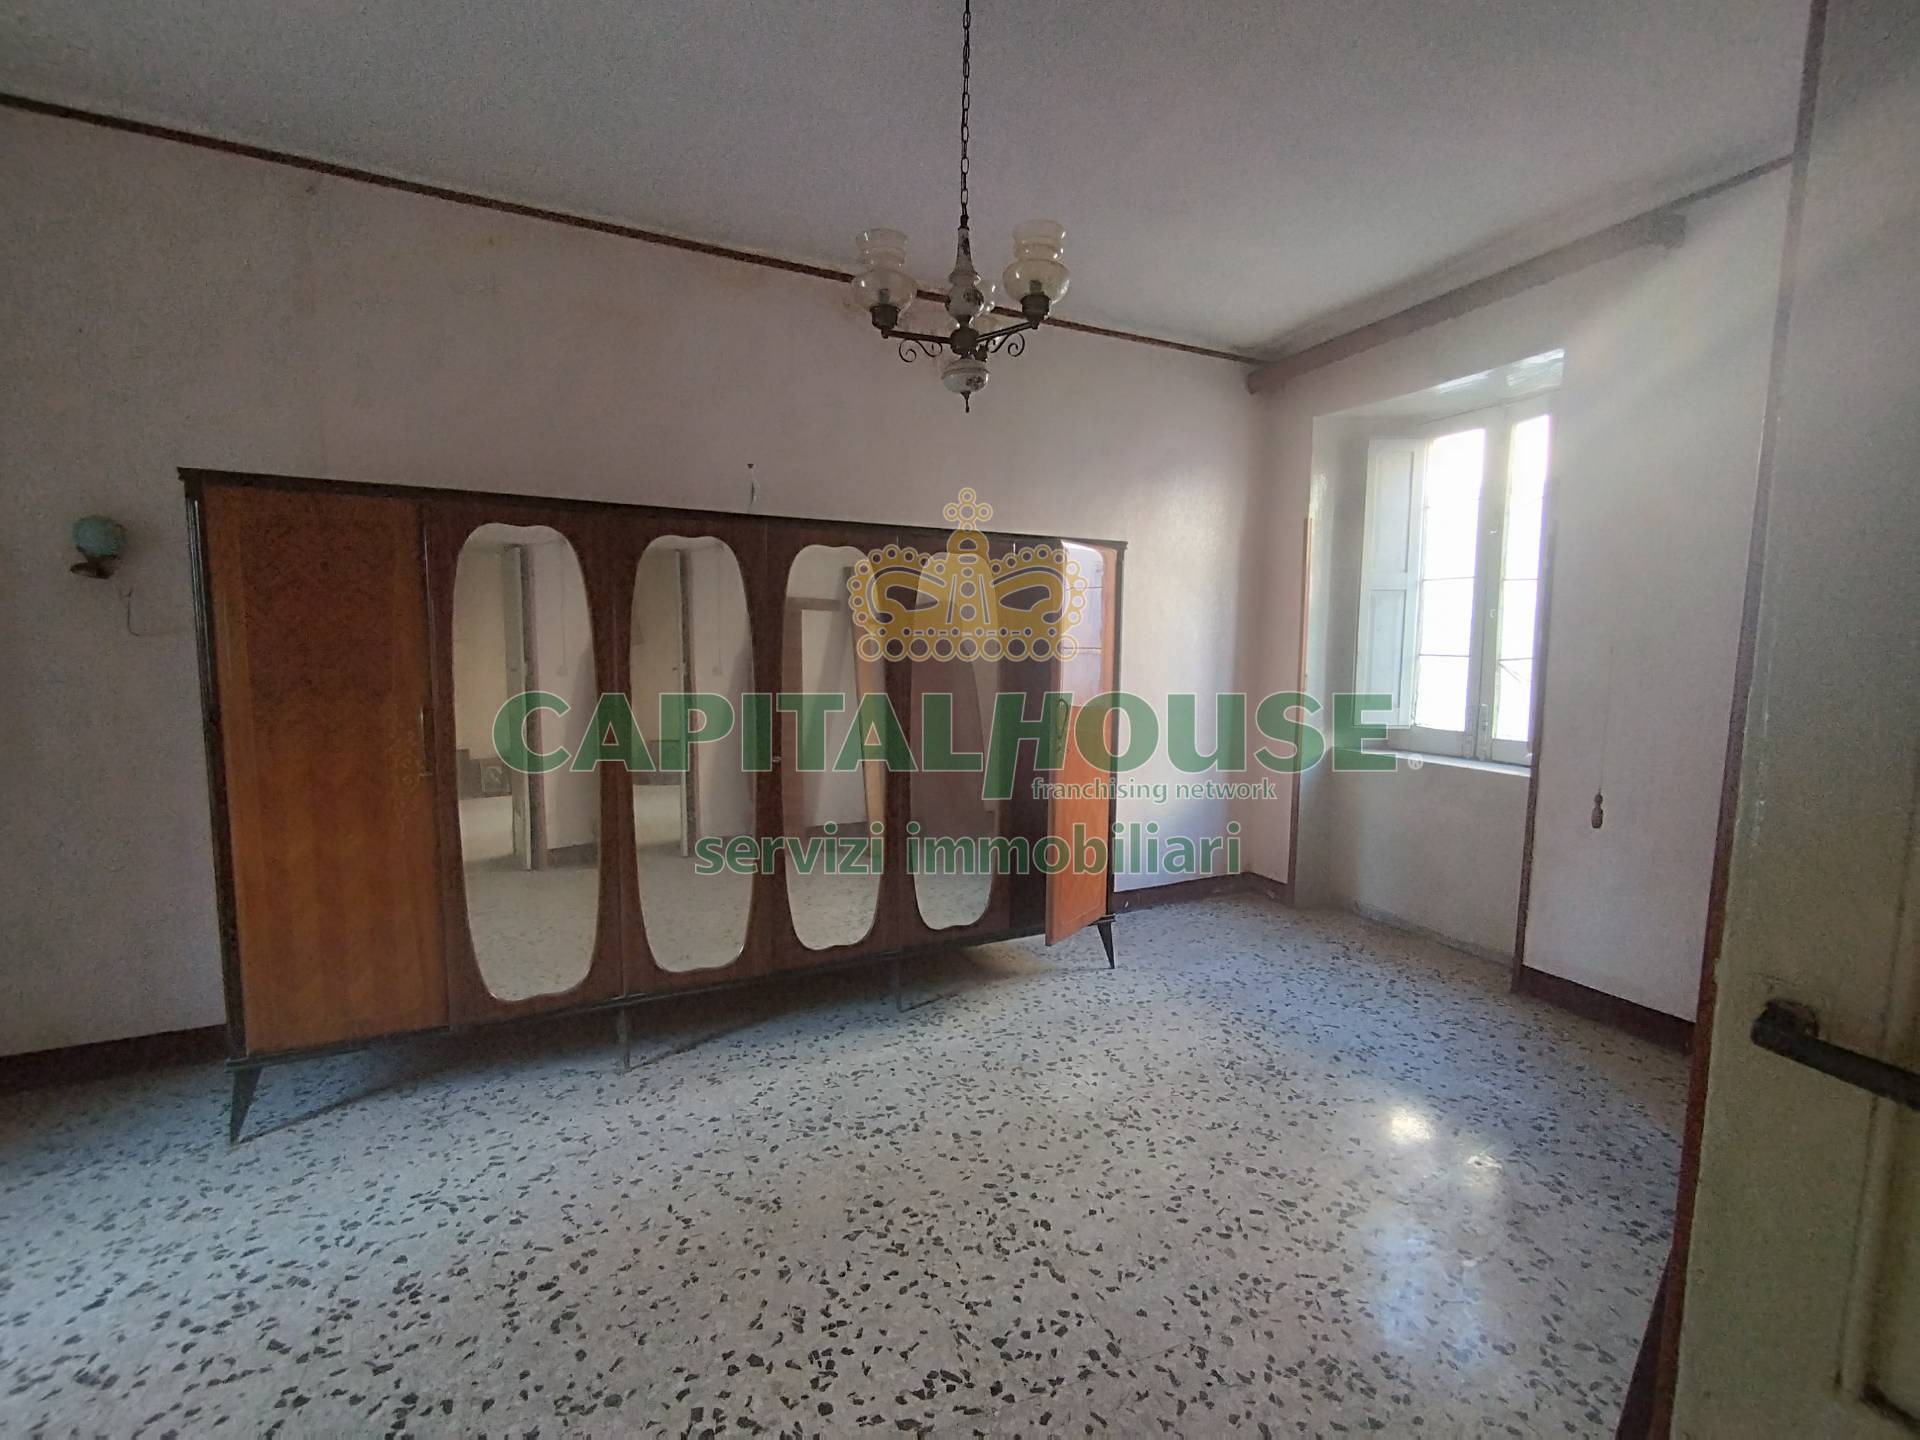 Appartamento in vendita a Pignataro Maggiore, 6 locali, prezzo € 10.000 | PortaleAgenzieImmobiliari.it